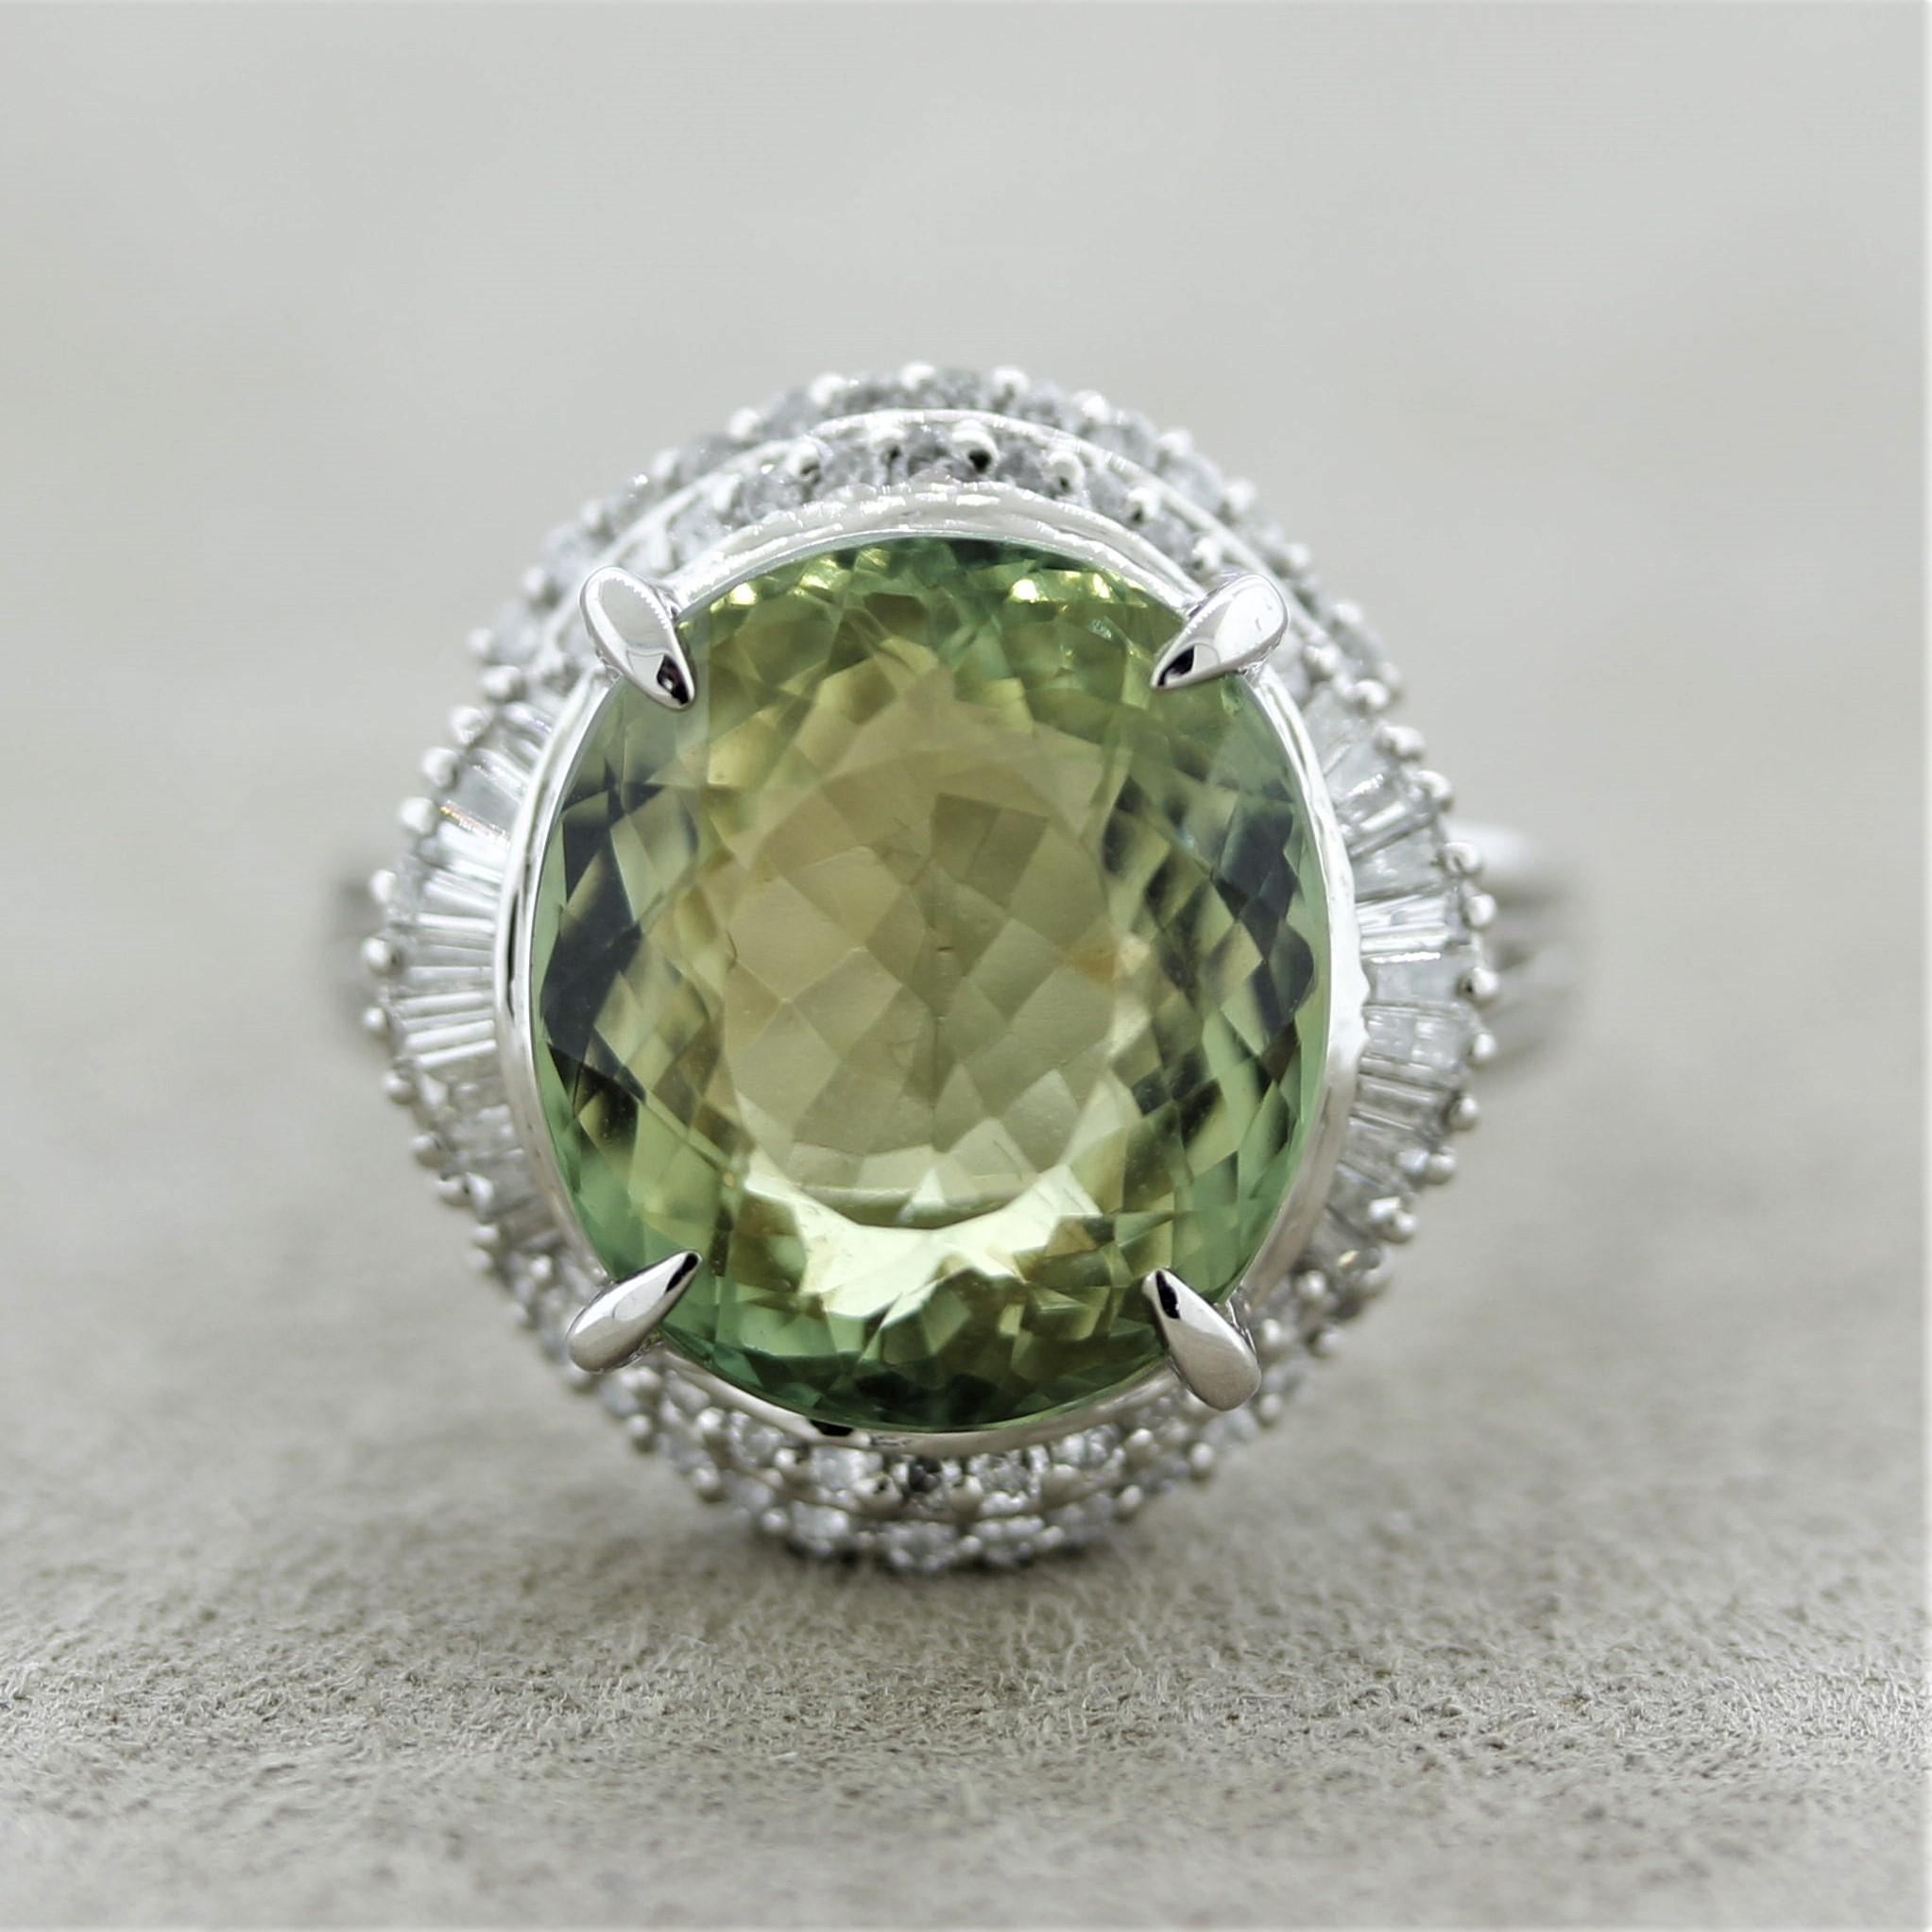 Une tourmaline de 10,50 carats, d'une couleur vert tilleul vive, occupe le devant de la scène. Elle est rehaussée par 0,50 carat de diamants ronds et baguettes sertis autour de la tourmaline dans un motif élégant. Fabriqué à la main en platine et